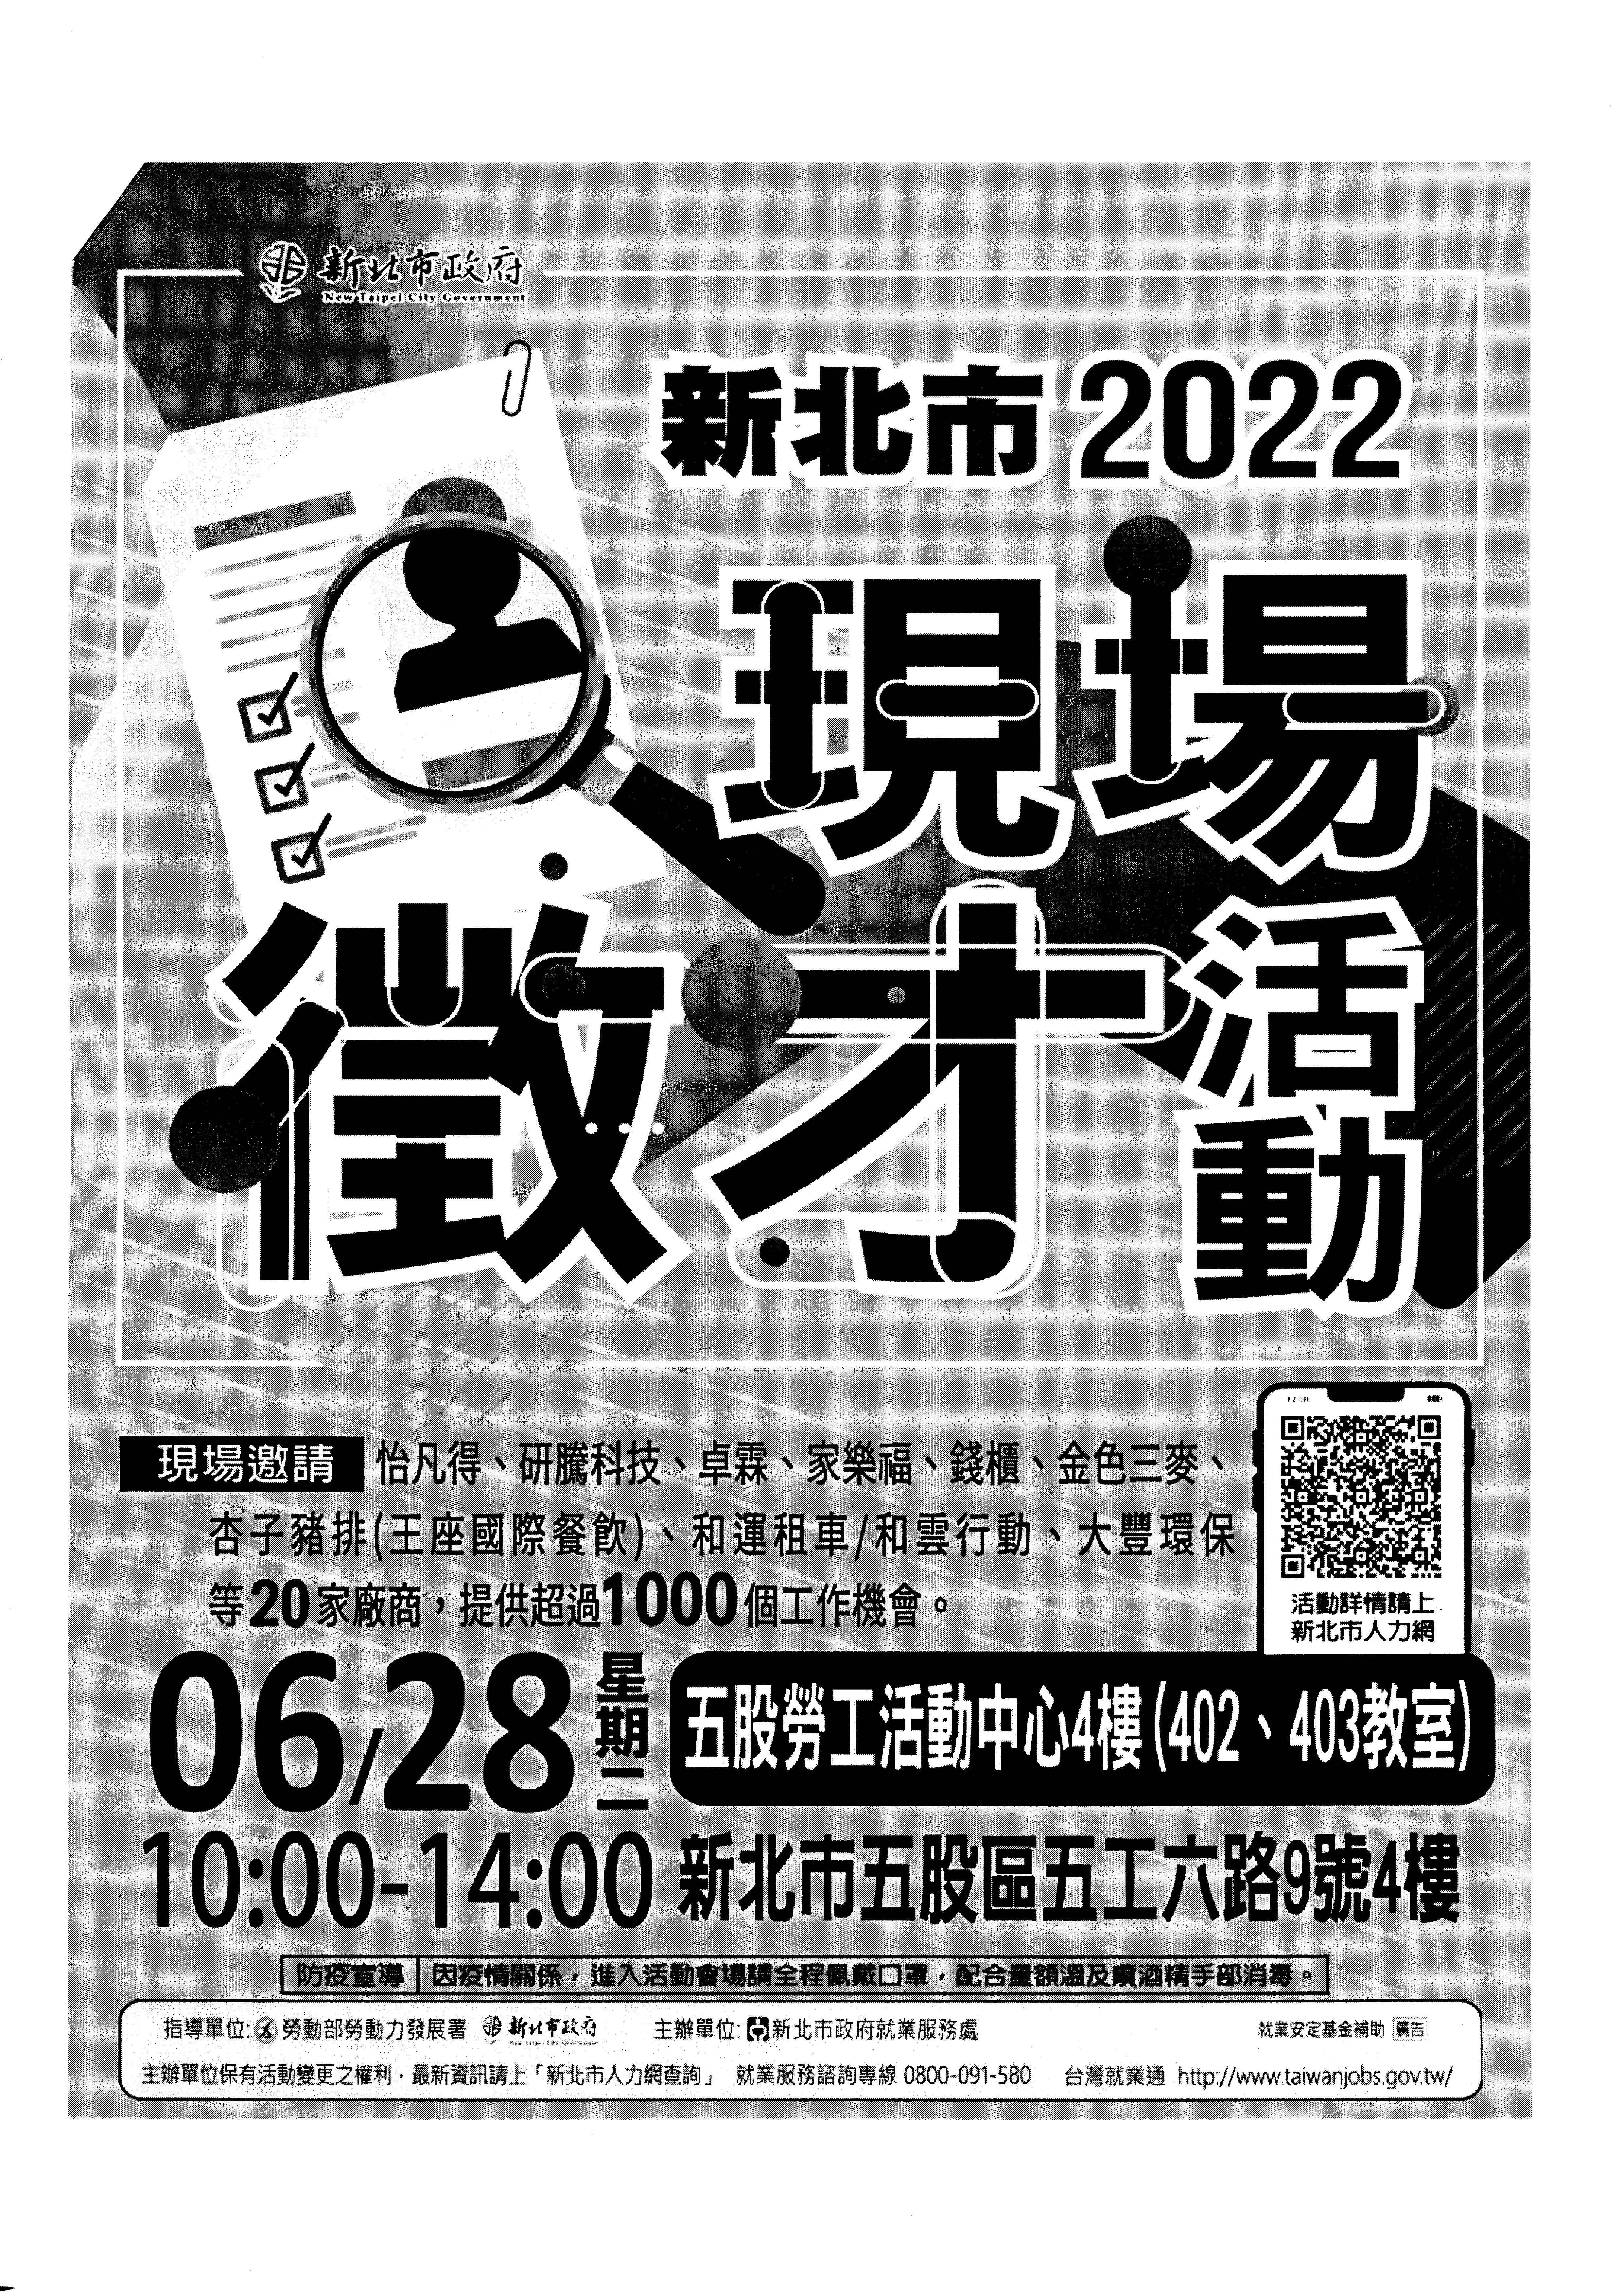 111/06/28 新北市「2022現場徵才」- 五股勞工活動中心4樓(402、403教室)。